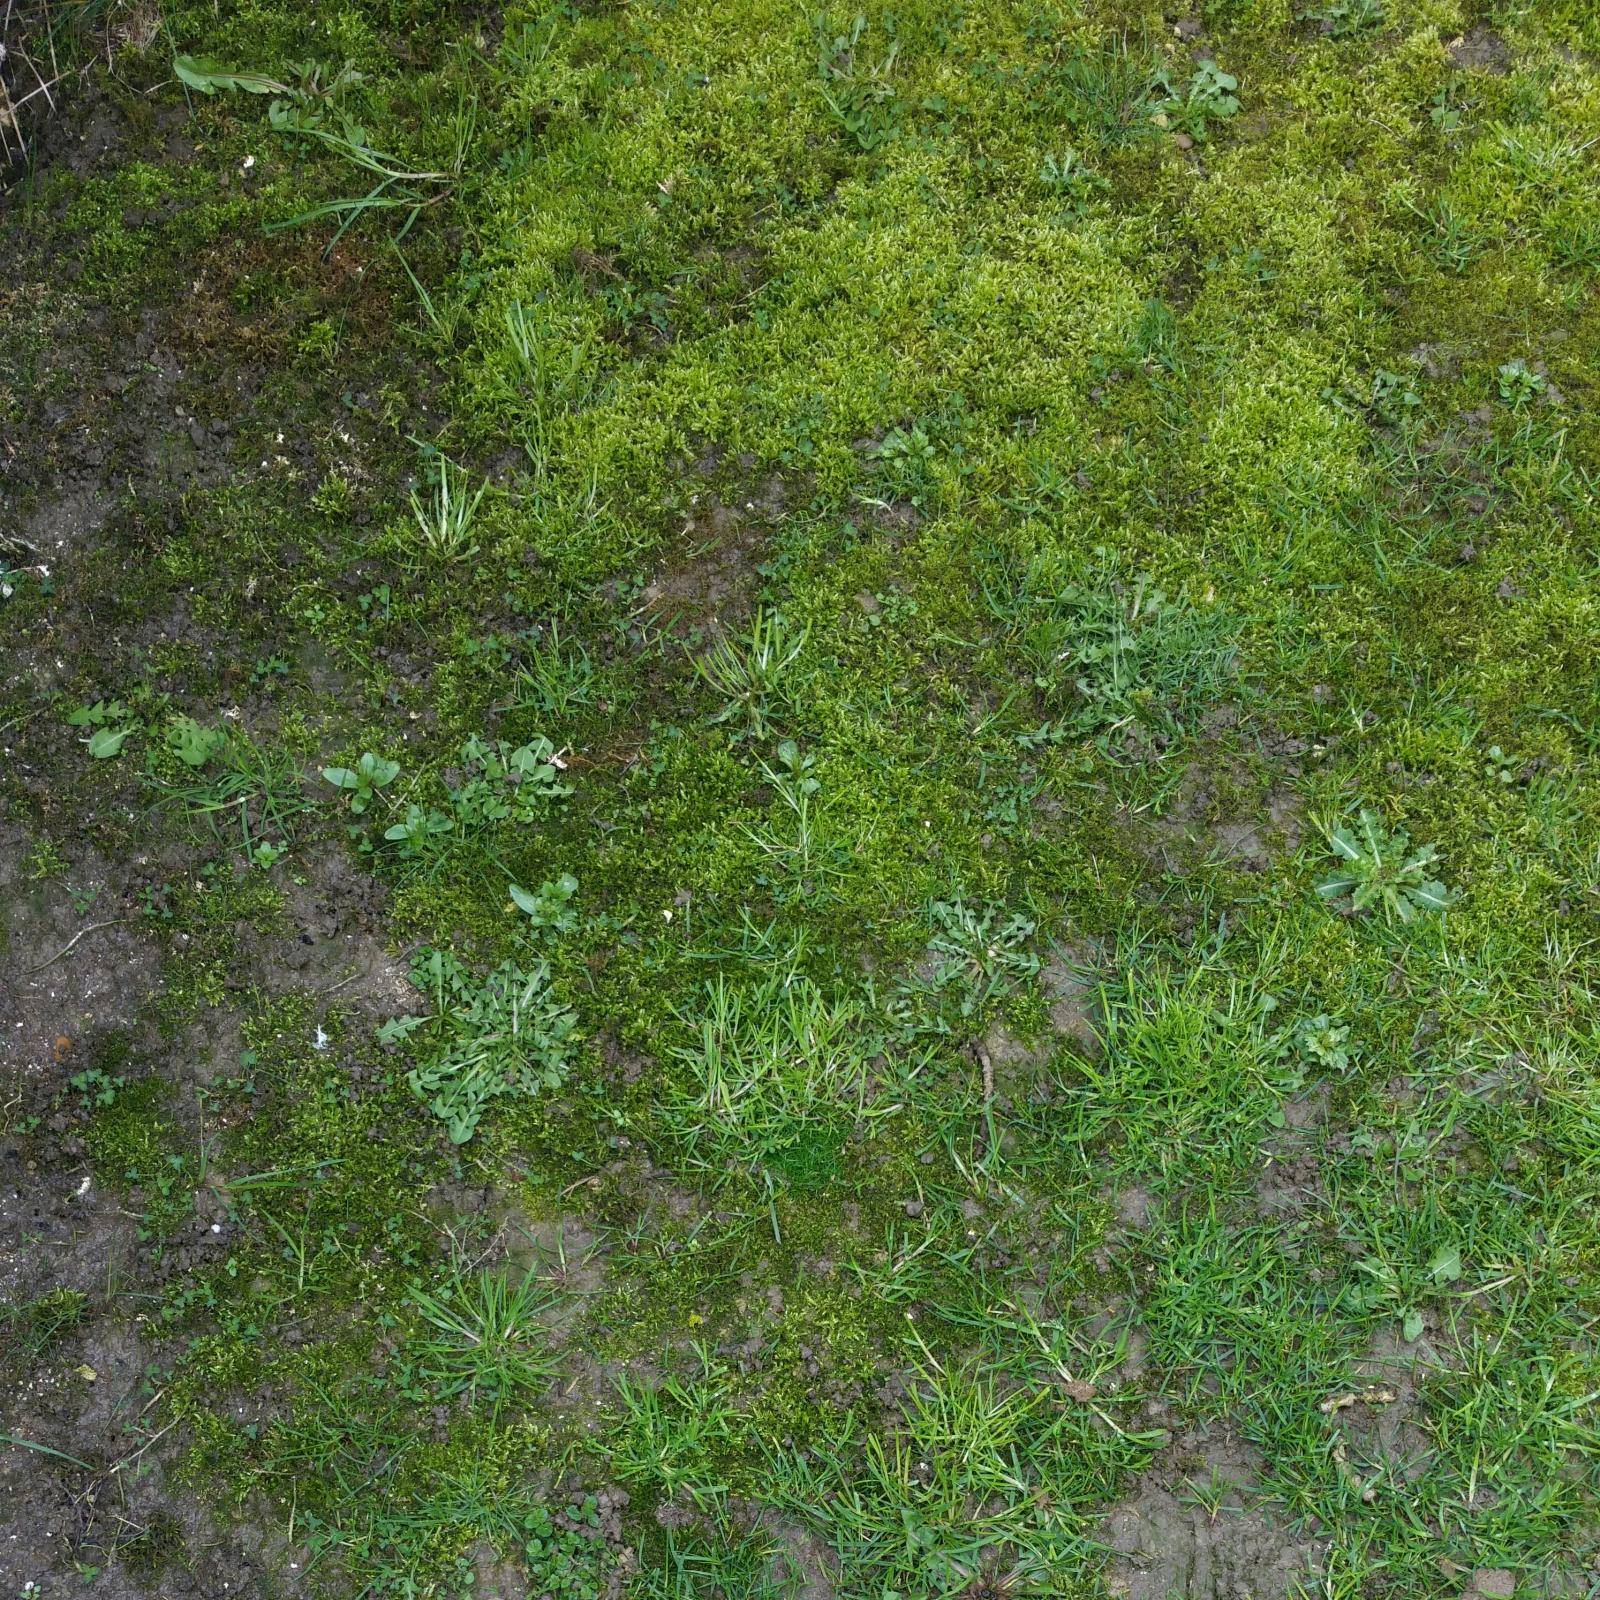 Algae and moss on turf